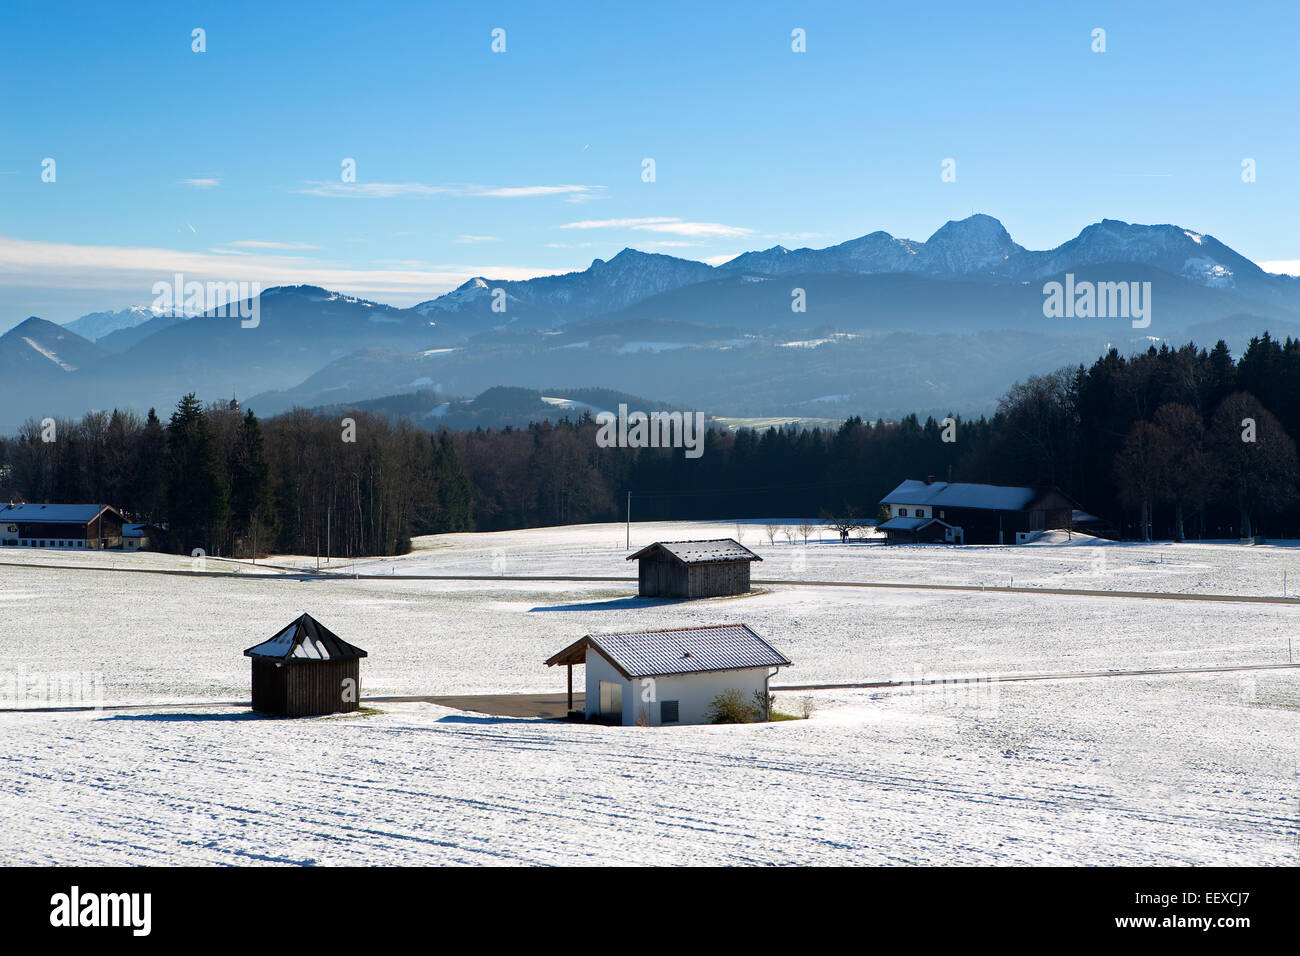 Paesaggio Innevato nelle montagne bavaresi in inverno Foto Stock